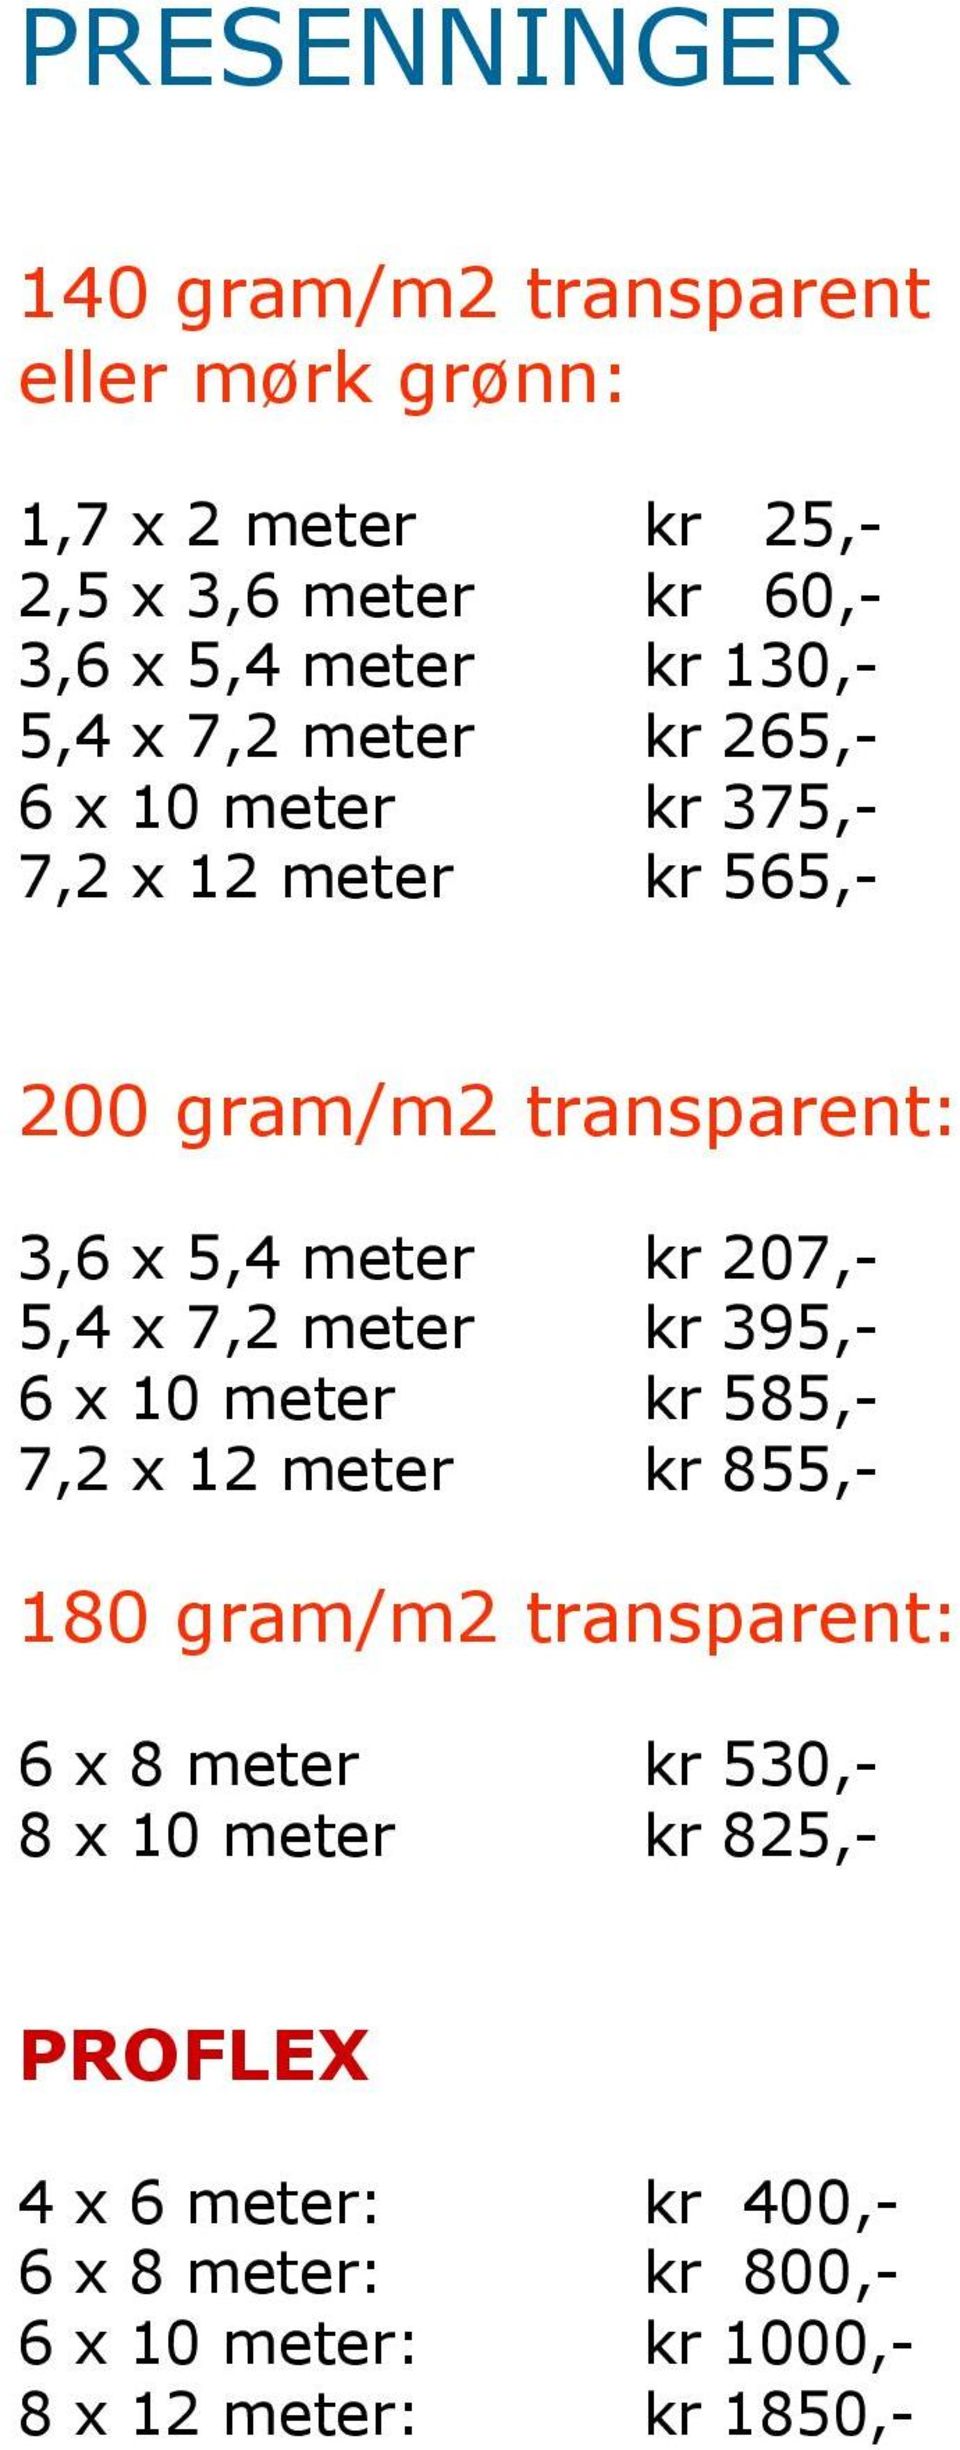 207,- 5,4 x 7,2 meter kr 395,- 6 x 10 meter kr 585,- 7,2 x 12 meter kr 855,- 180 gram/m2 transparent: 6 x 8 meter kr